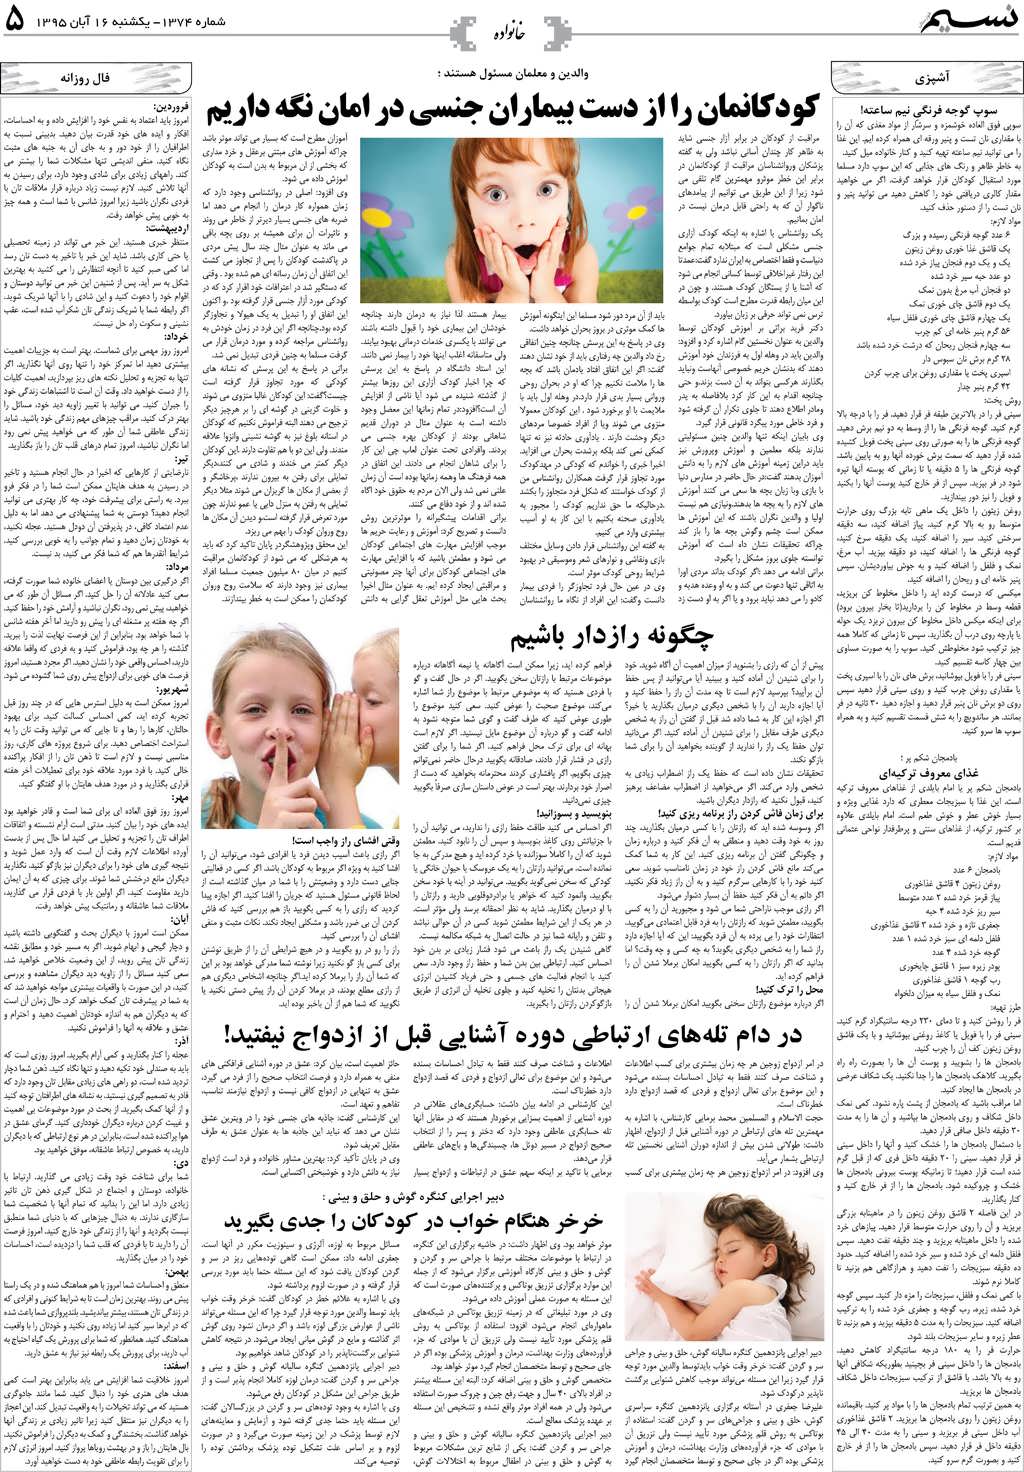 صفحه خانواده روزنامه نسیم شماره 1374